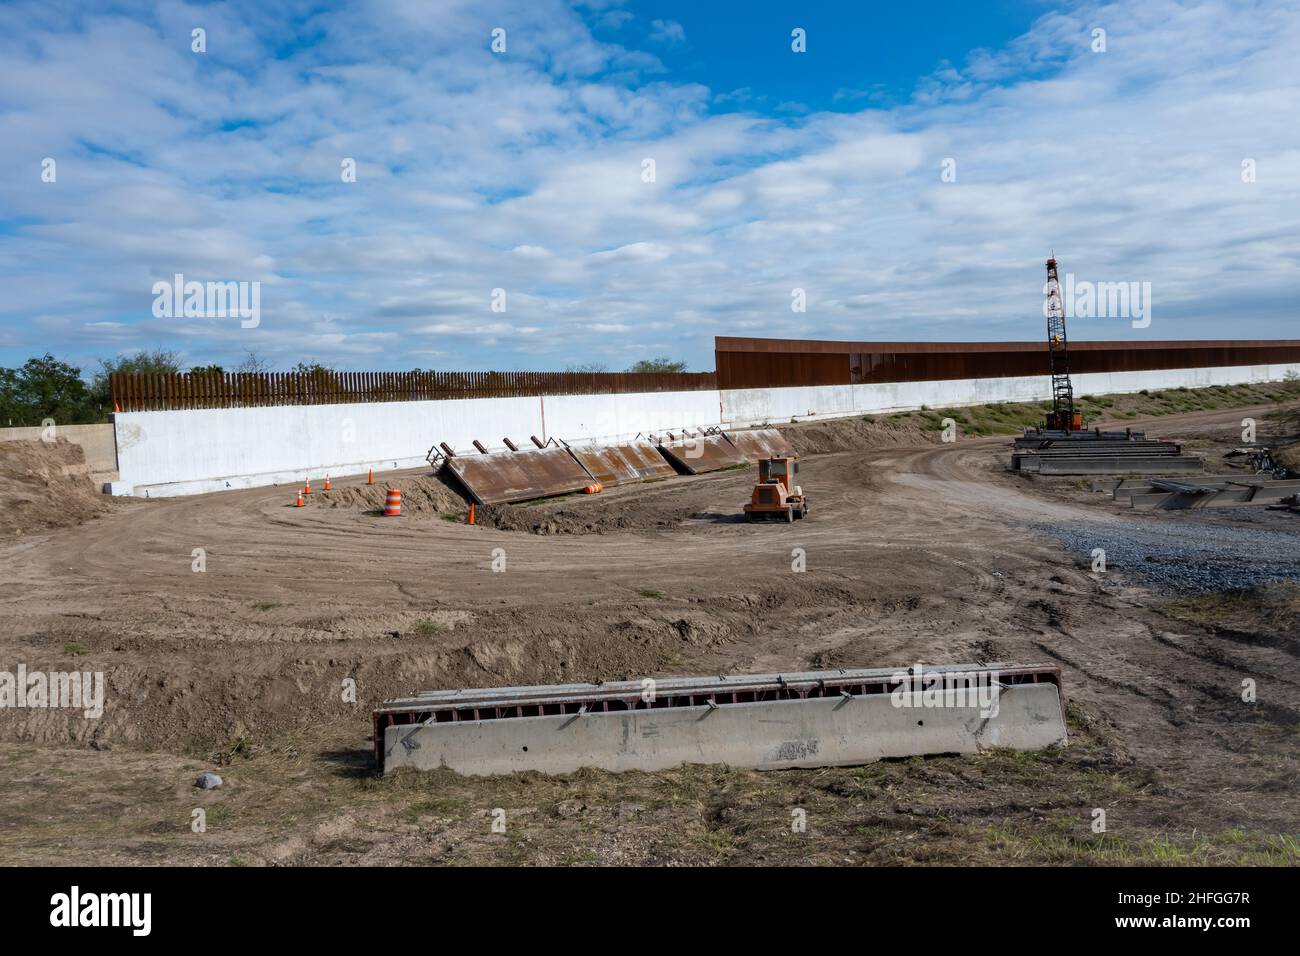 Le mur frontalier USA-Mexique est en construction.McAllen, Texas, États-Unis. Banque D'Images